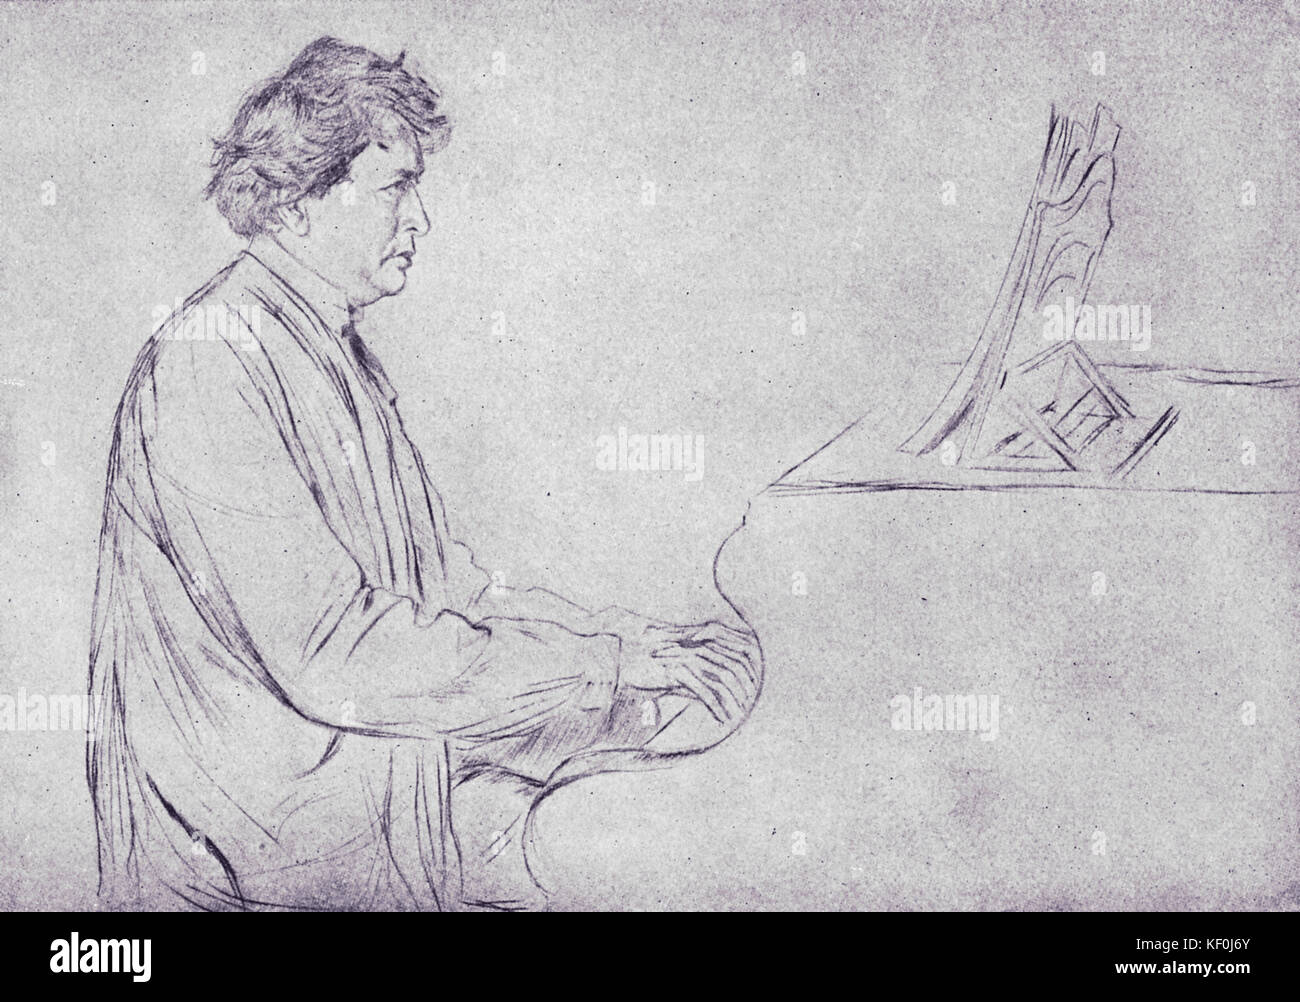 Ferruccio Busoni am Piano, Skizze von von Ernst Oppler. Italienisch-deutsche Pianist und Komponist, 1. April 1866 - vom 27. Juli 1924 Stockfoto